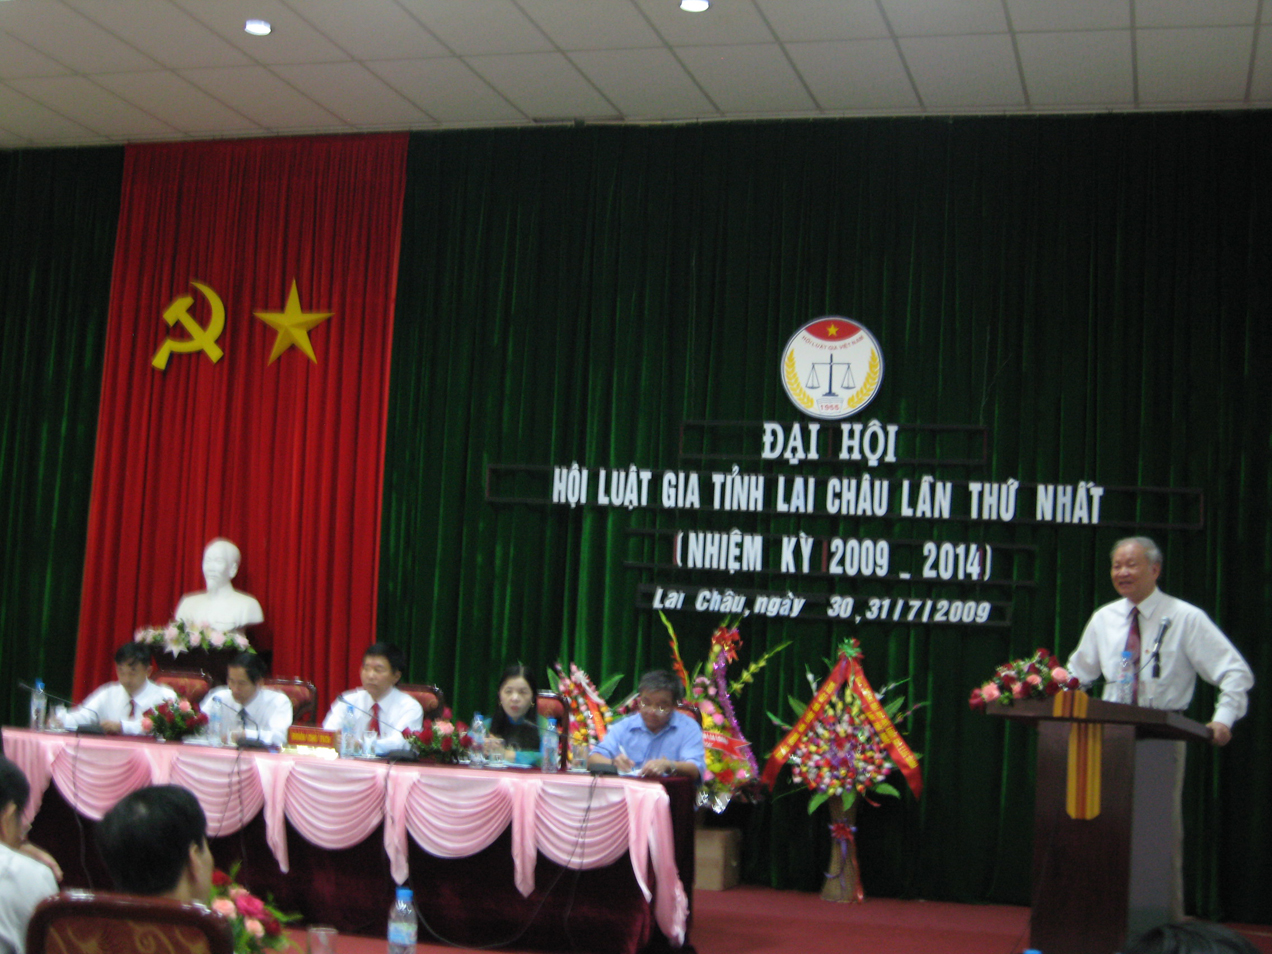 Phát biểu của đồng chí Nguyễn Niêm - Uỷ viên Thường vụ - Hội Luật gia Việt Nam tại Đại hội Hội Luật gia tỉnh Lai Châu lần thứ nhất, nhiệm kỳ 2009 – 2014